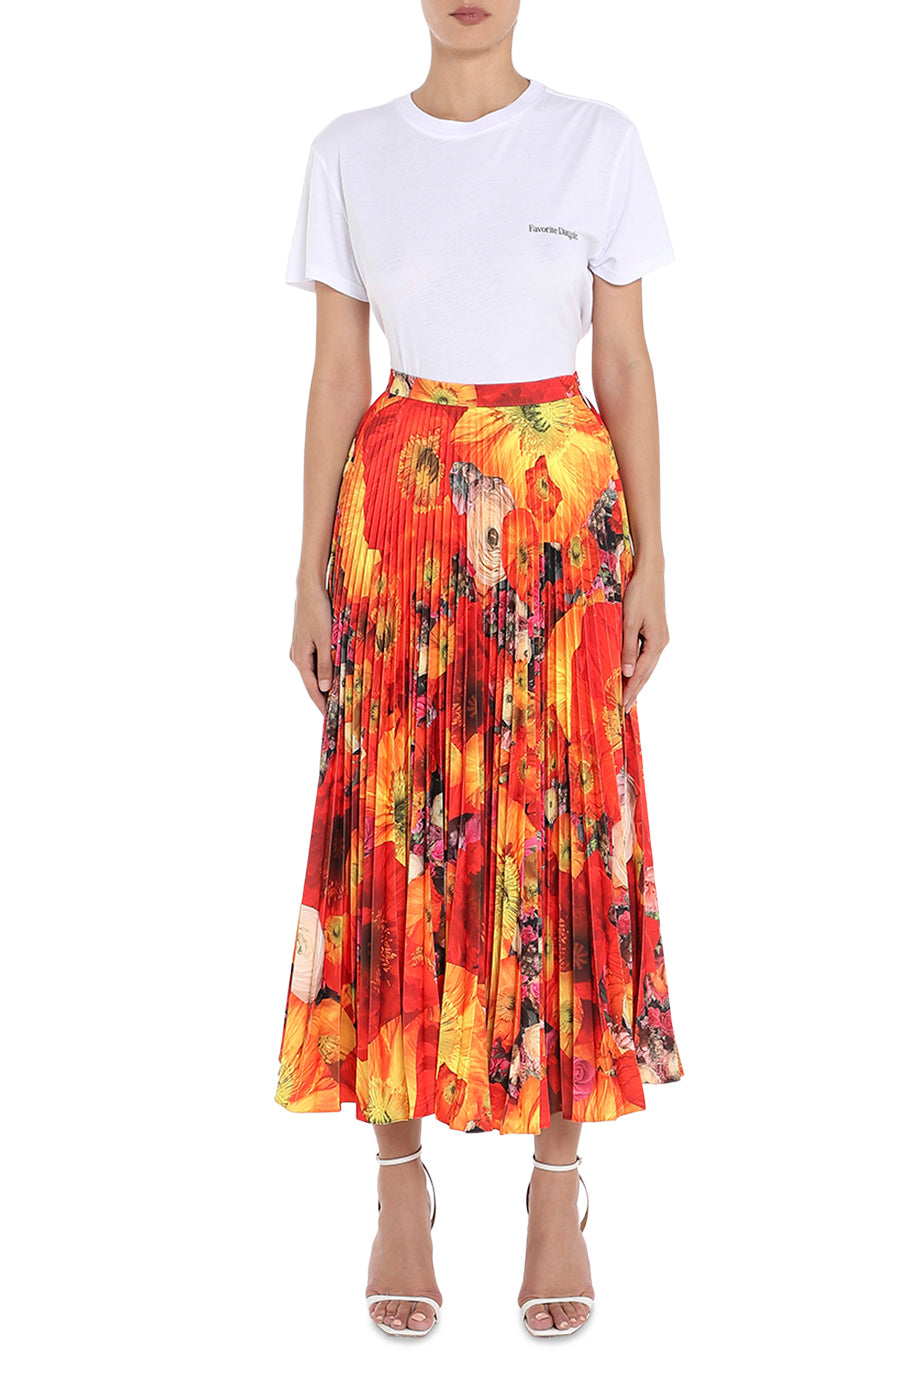 The Full Bloom Pleated Skirt